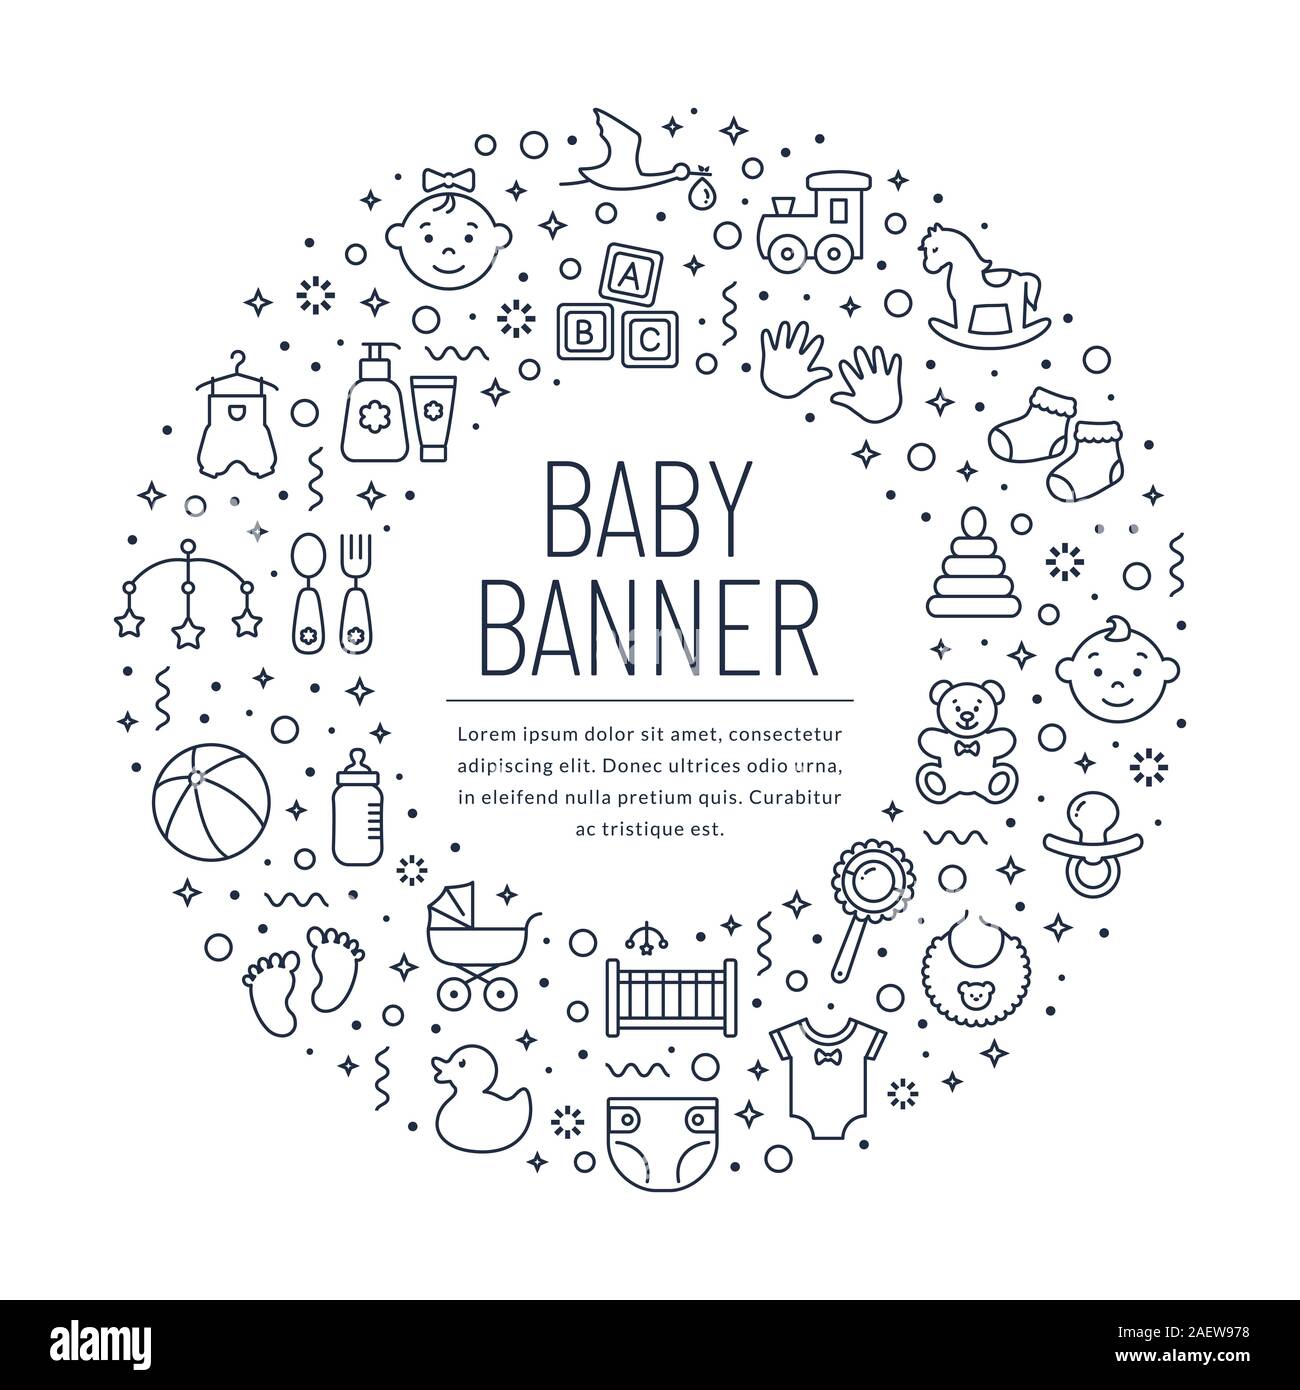 Babybanner mit Linien-Symbolen. Kinderspielzeug und Kleidung, Neugeborene und Kinder. Weißer Hintergrund mit schwarzen Umrisssymbolen und Textort. Stock Vektor